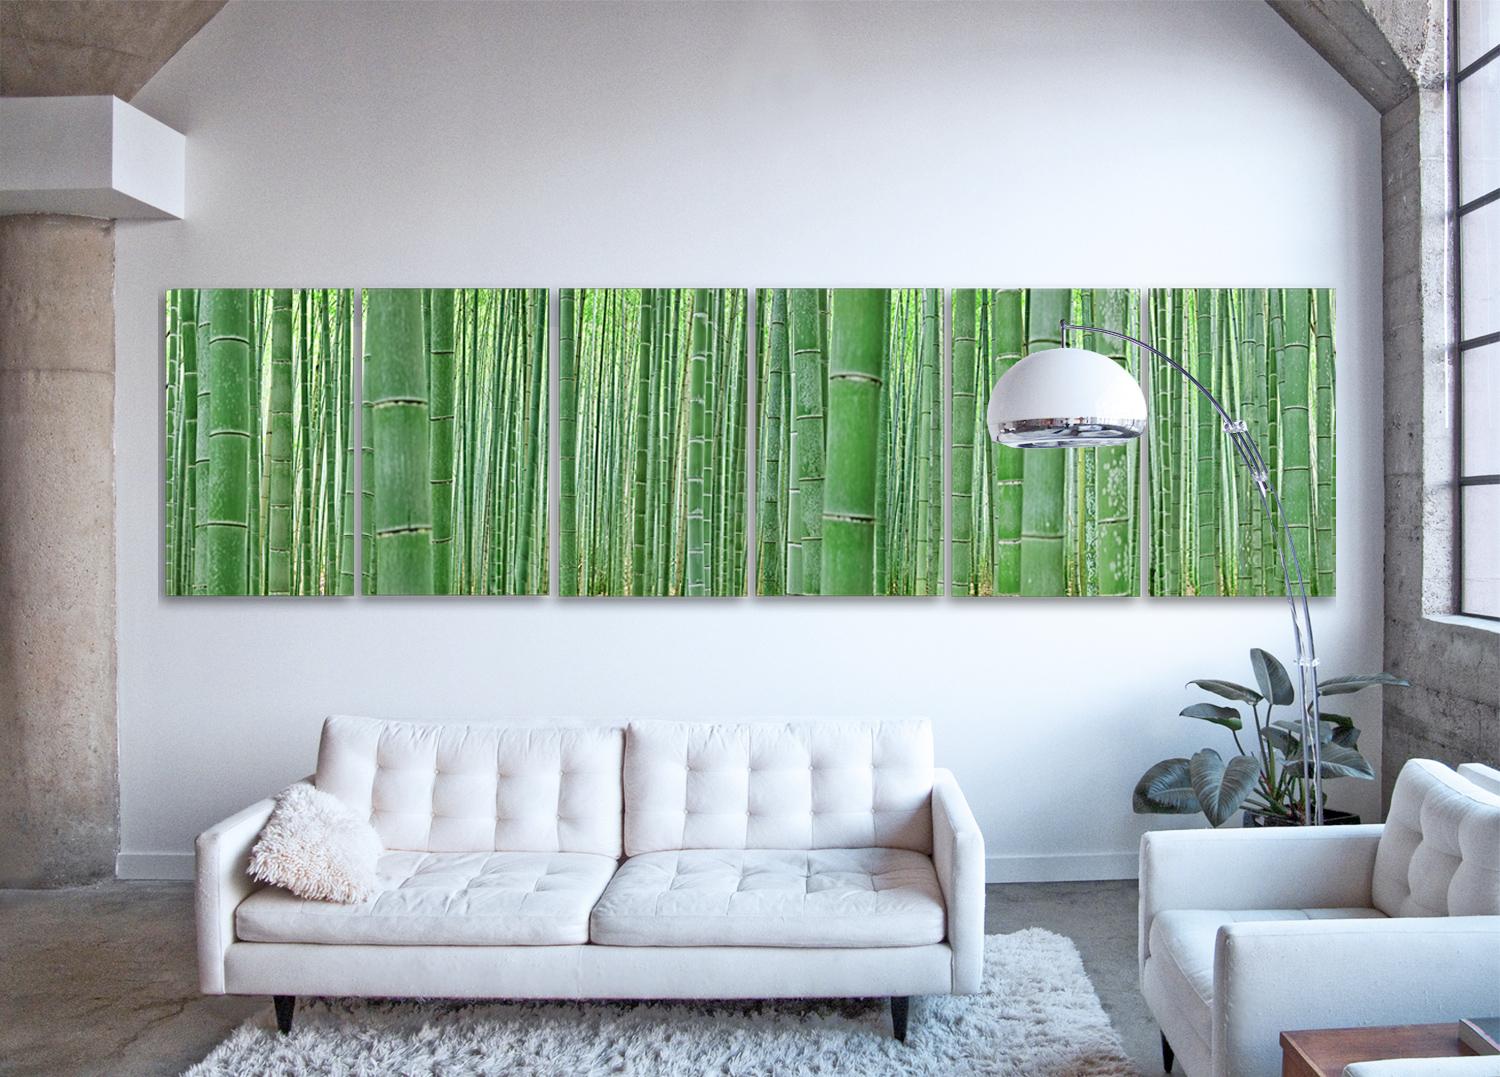 Forest de bambou (6 panneaux de verre) - observation abstraite d'une forêt japonaise emblématique  - Print de Erik Pawassar